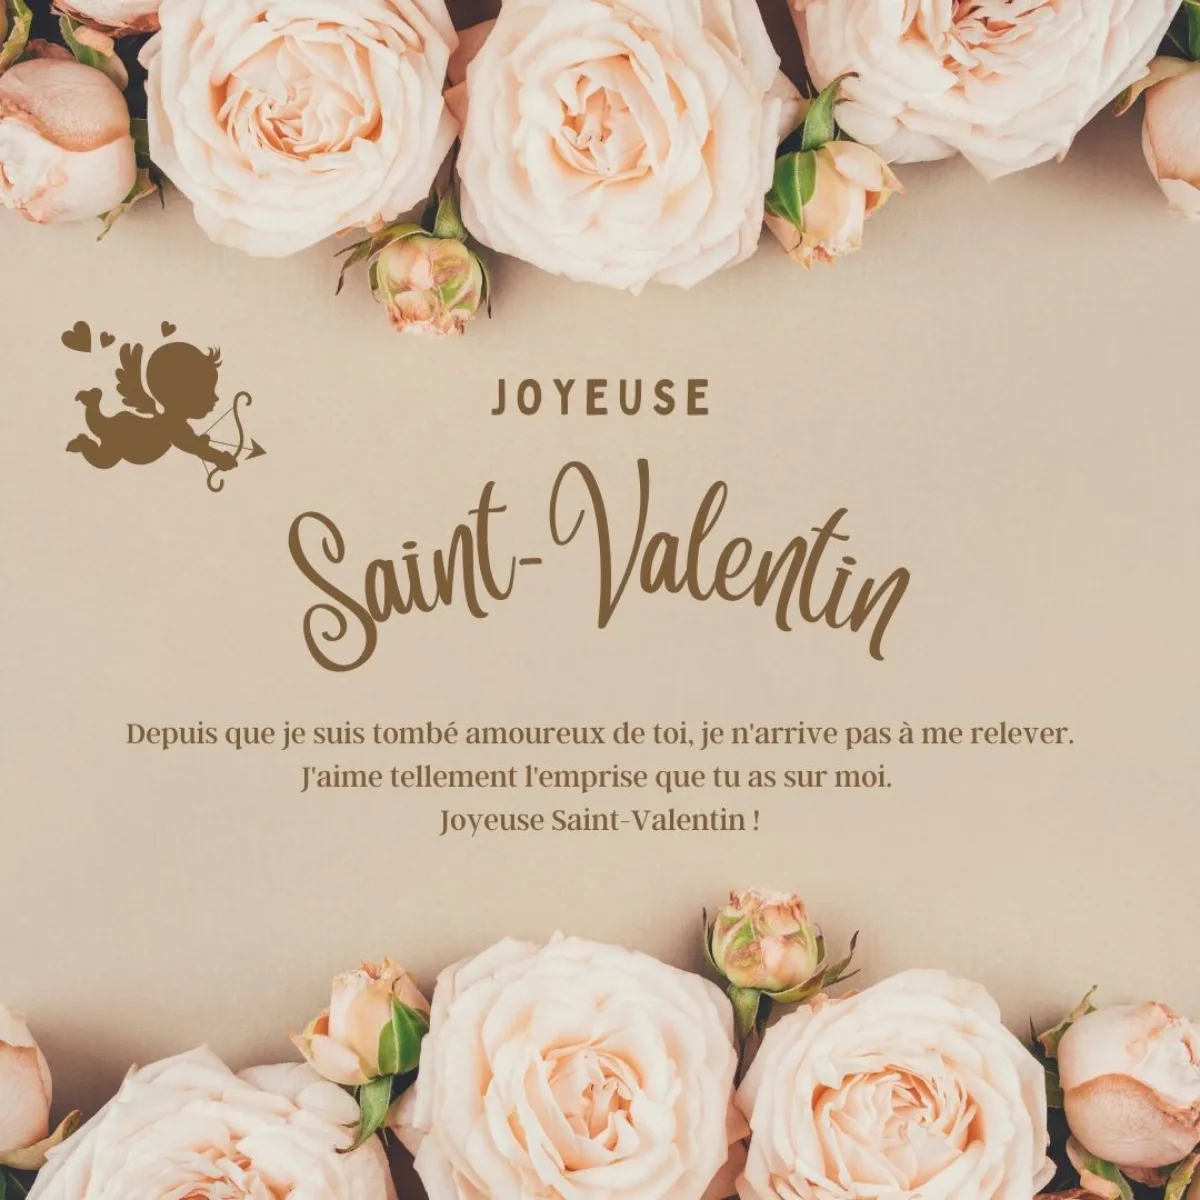 declarer son amour citation saint valentin avec image de roses fleurs